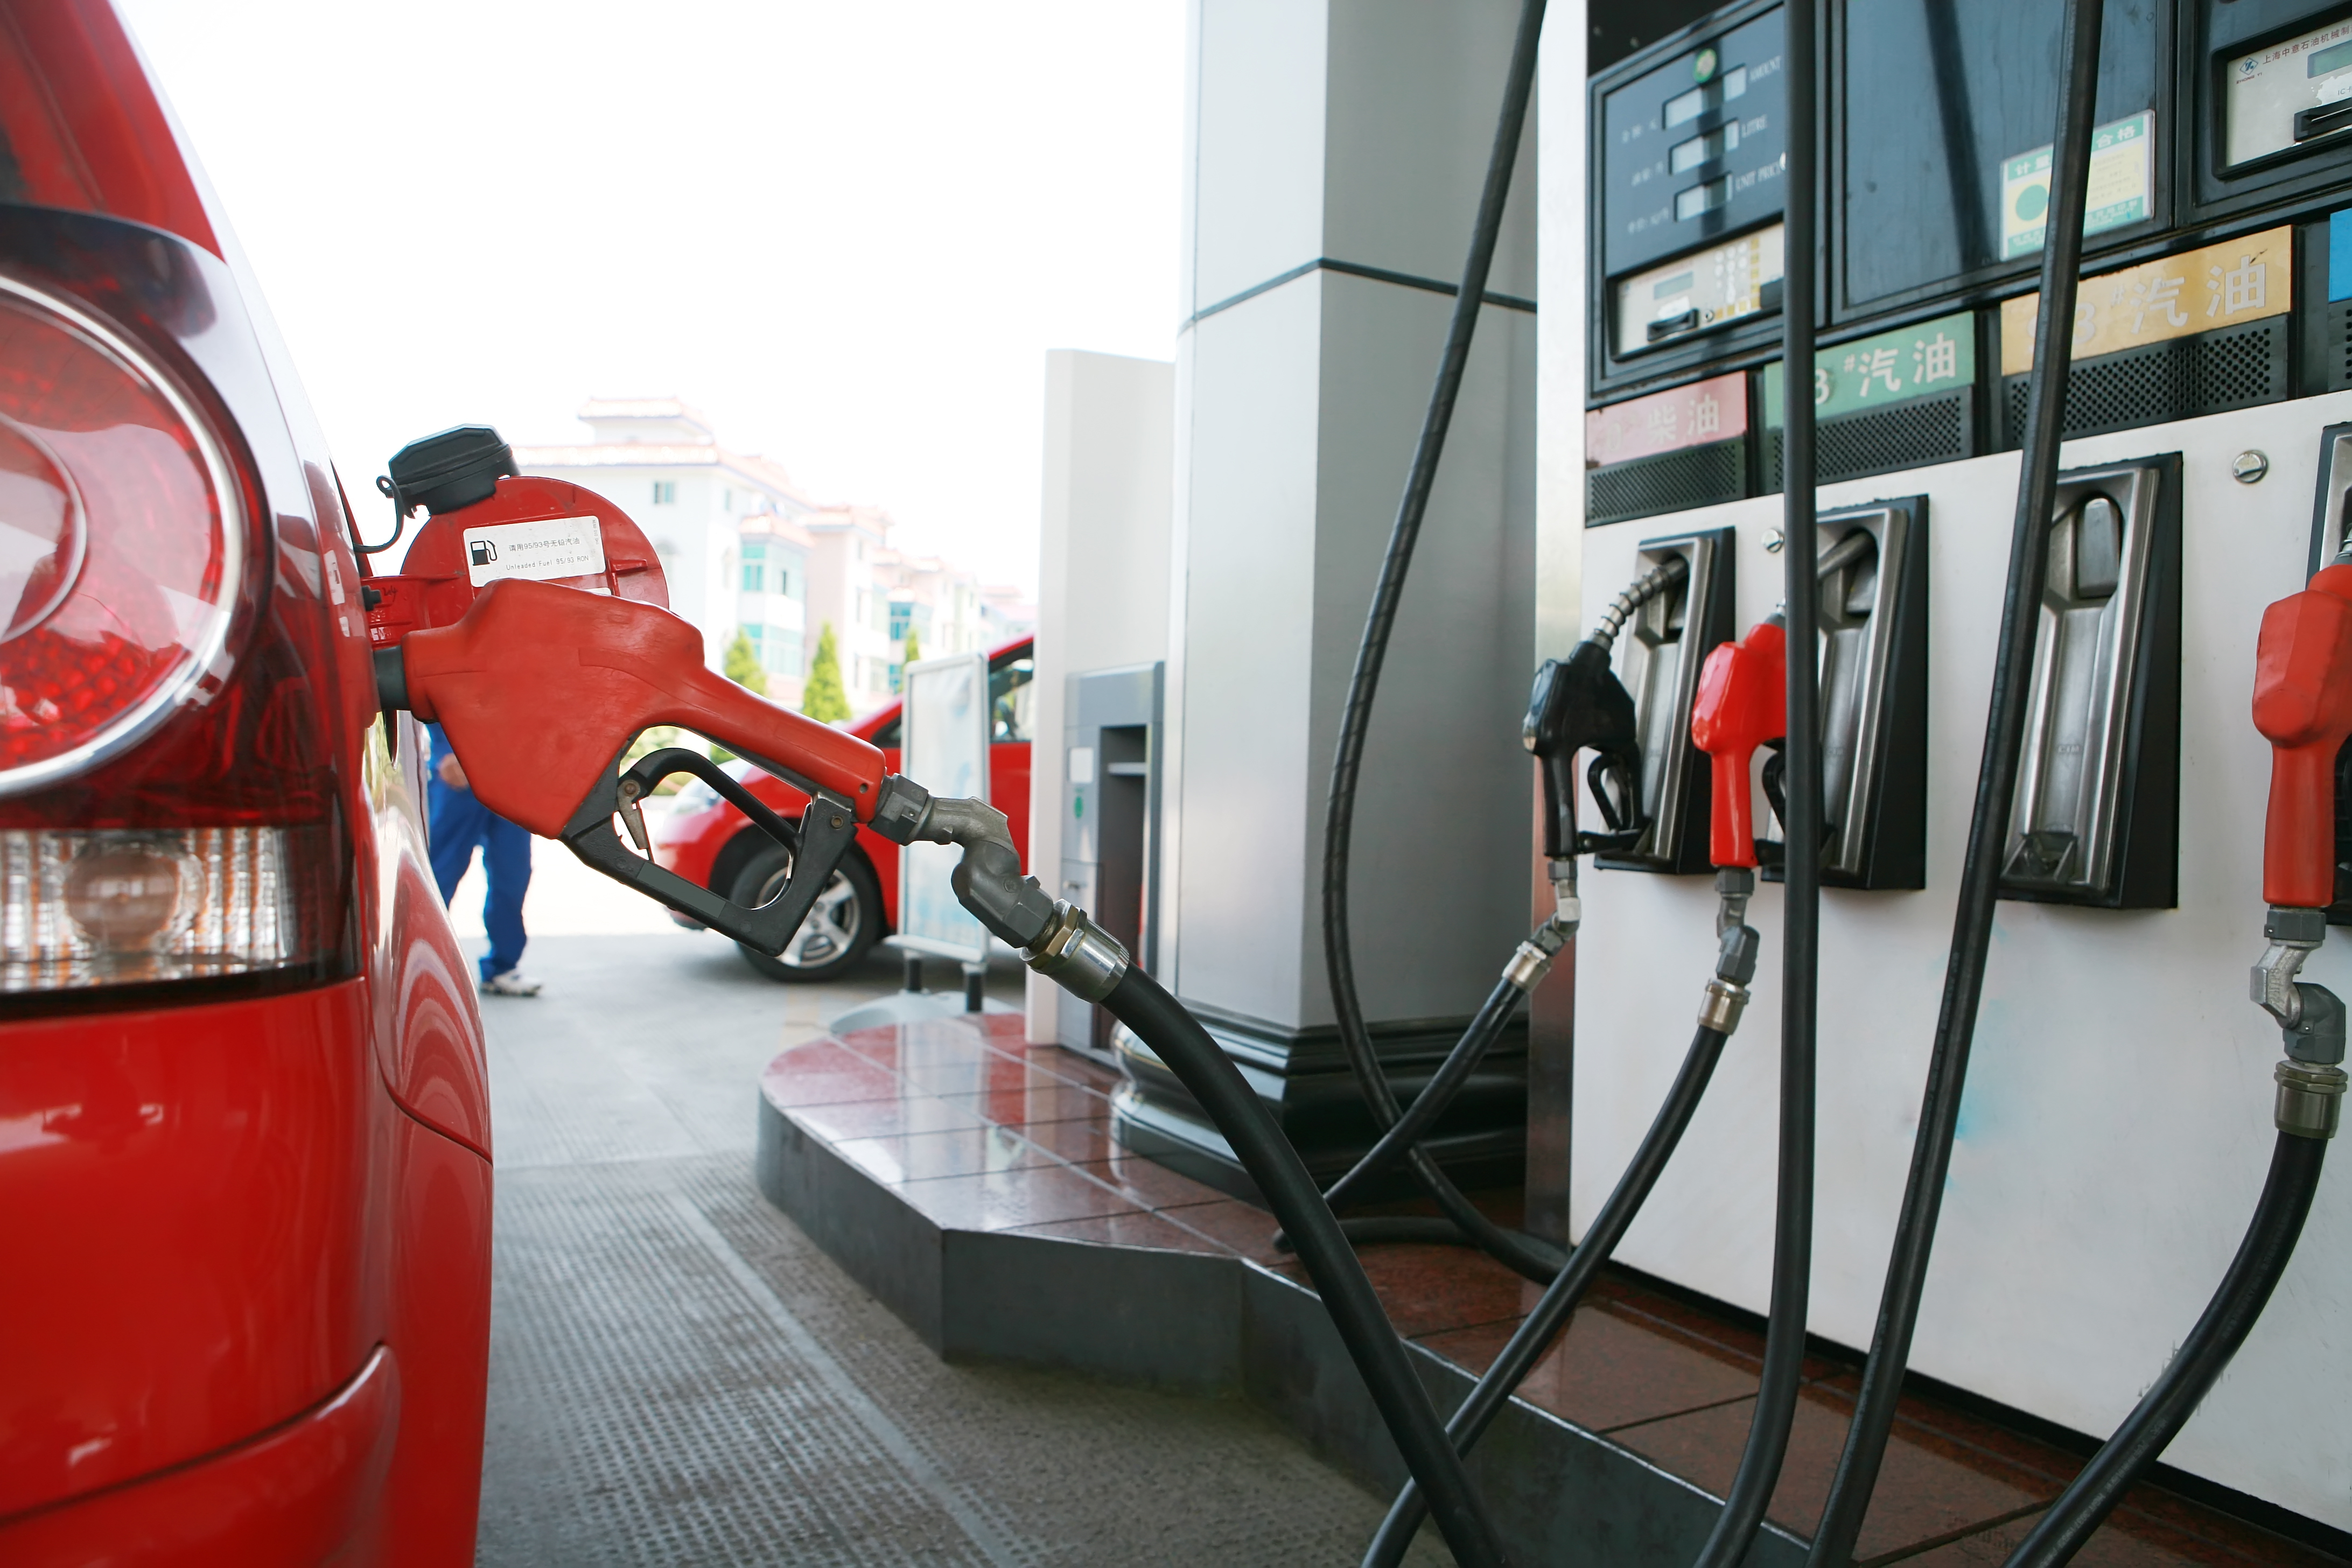 Afacerile furnizorului de carburanţi Artoil, controlat de familia Bunceanu din Timişoara, au crescut cu 45% în 2021, ajungând la 145 de milioane de euro